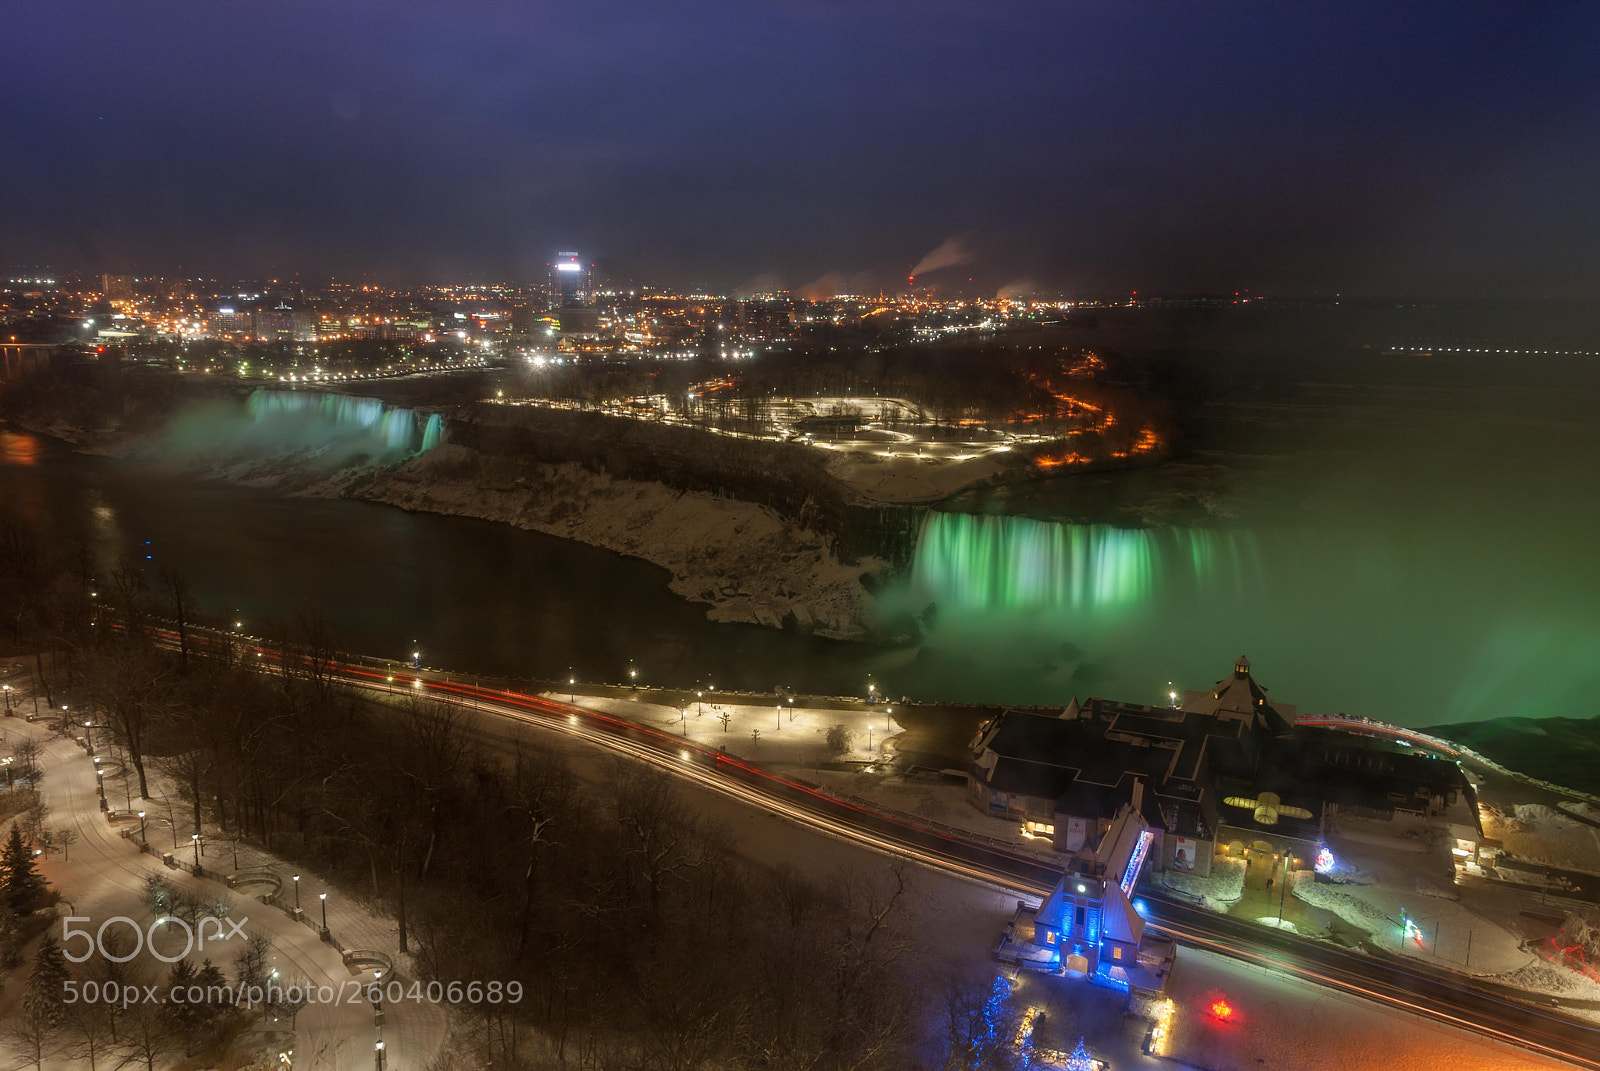 Nikon D80 sample photo. Niagara falls with light photography